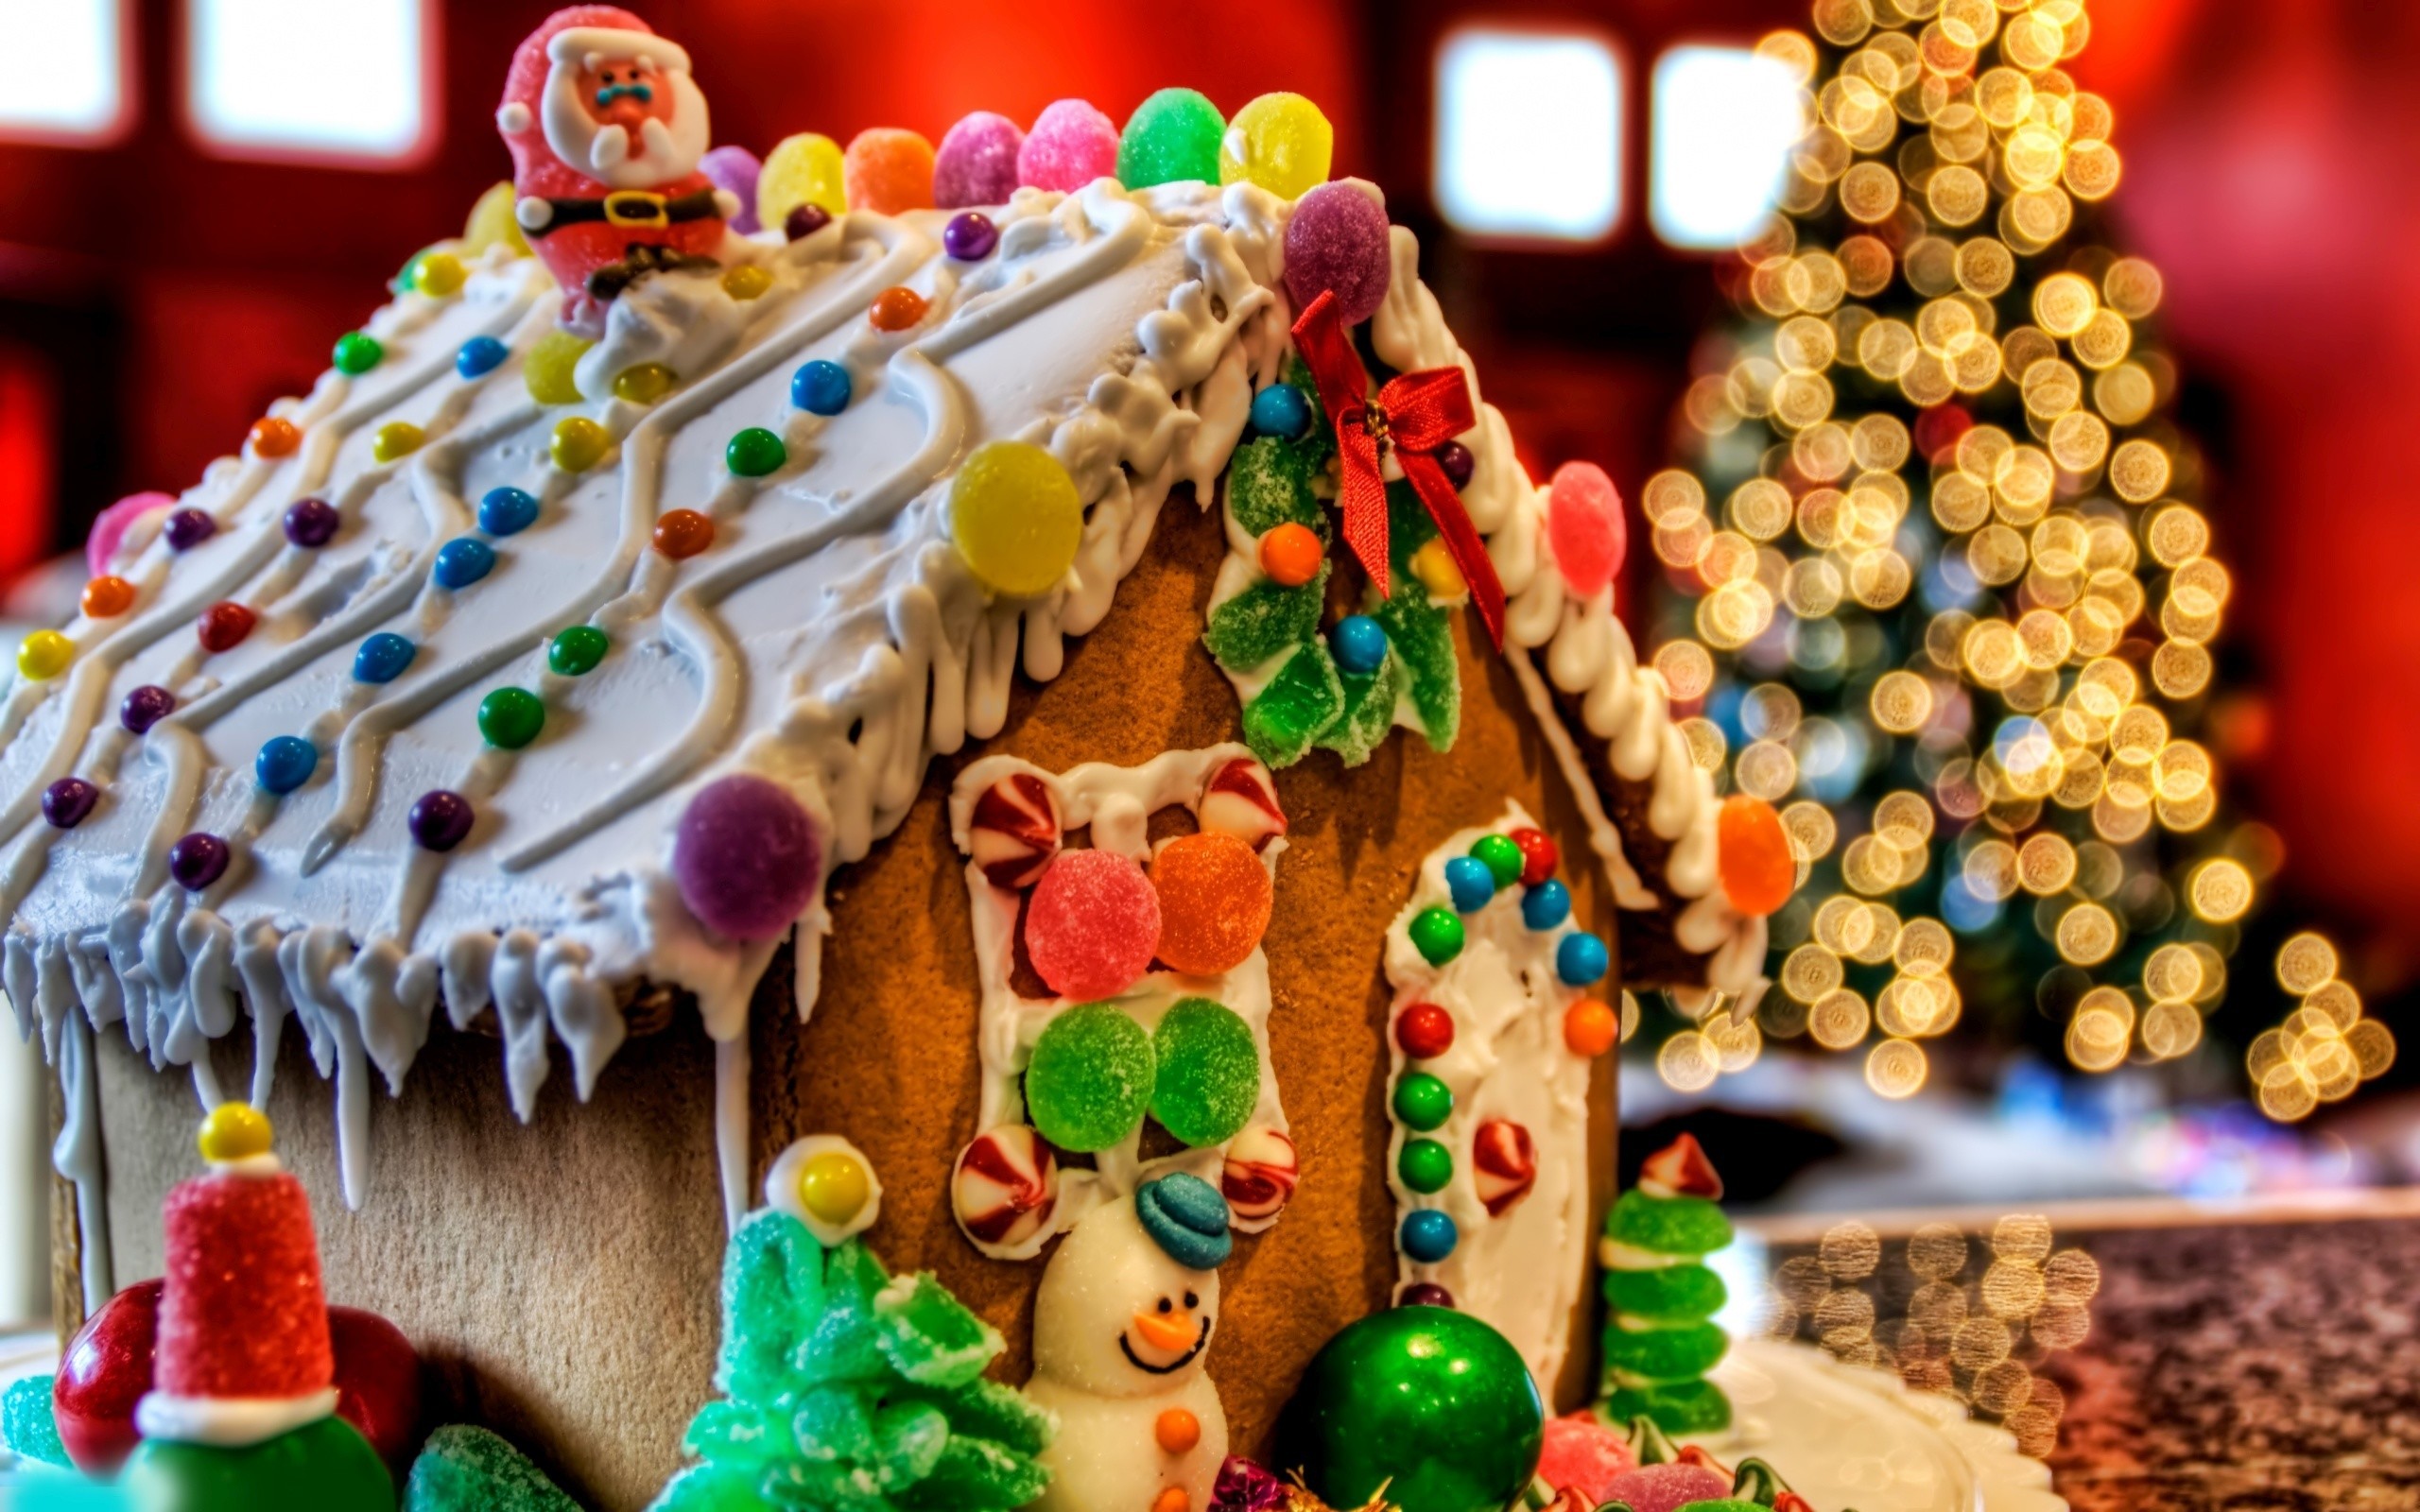 ジンジャーブレッドの壁紙,ジンジャーブレッドハウス,ジンジャーブレッド,食物,デザート,クリスマスの飾り